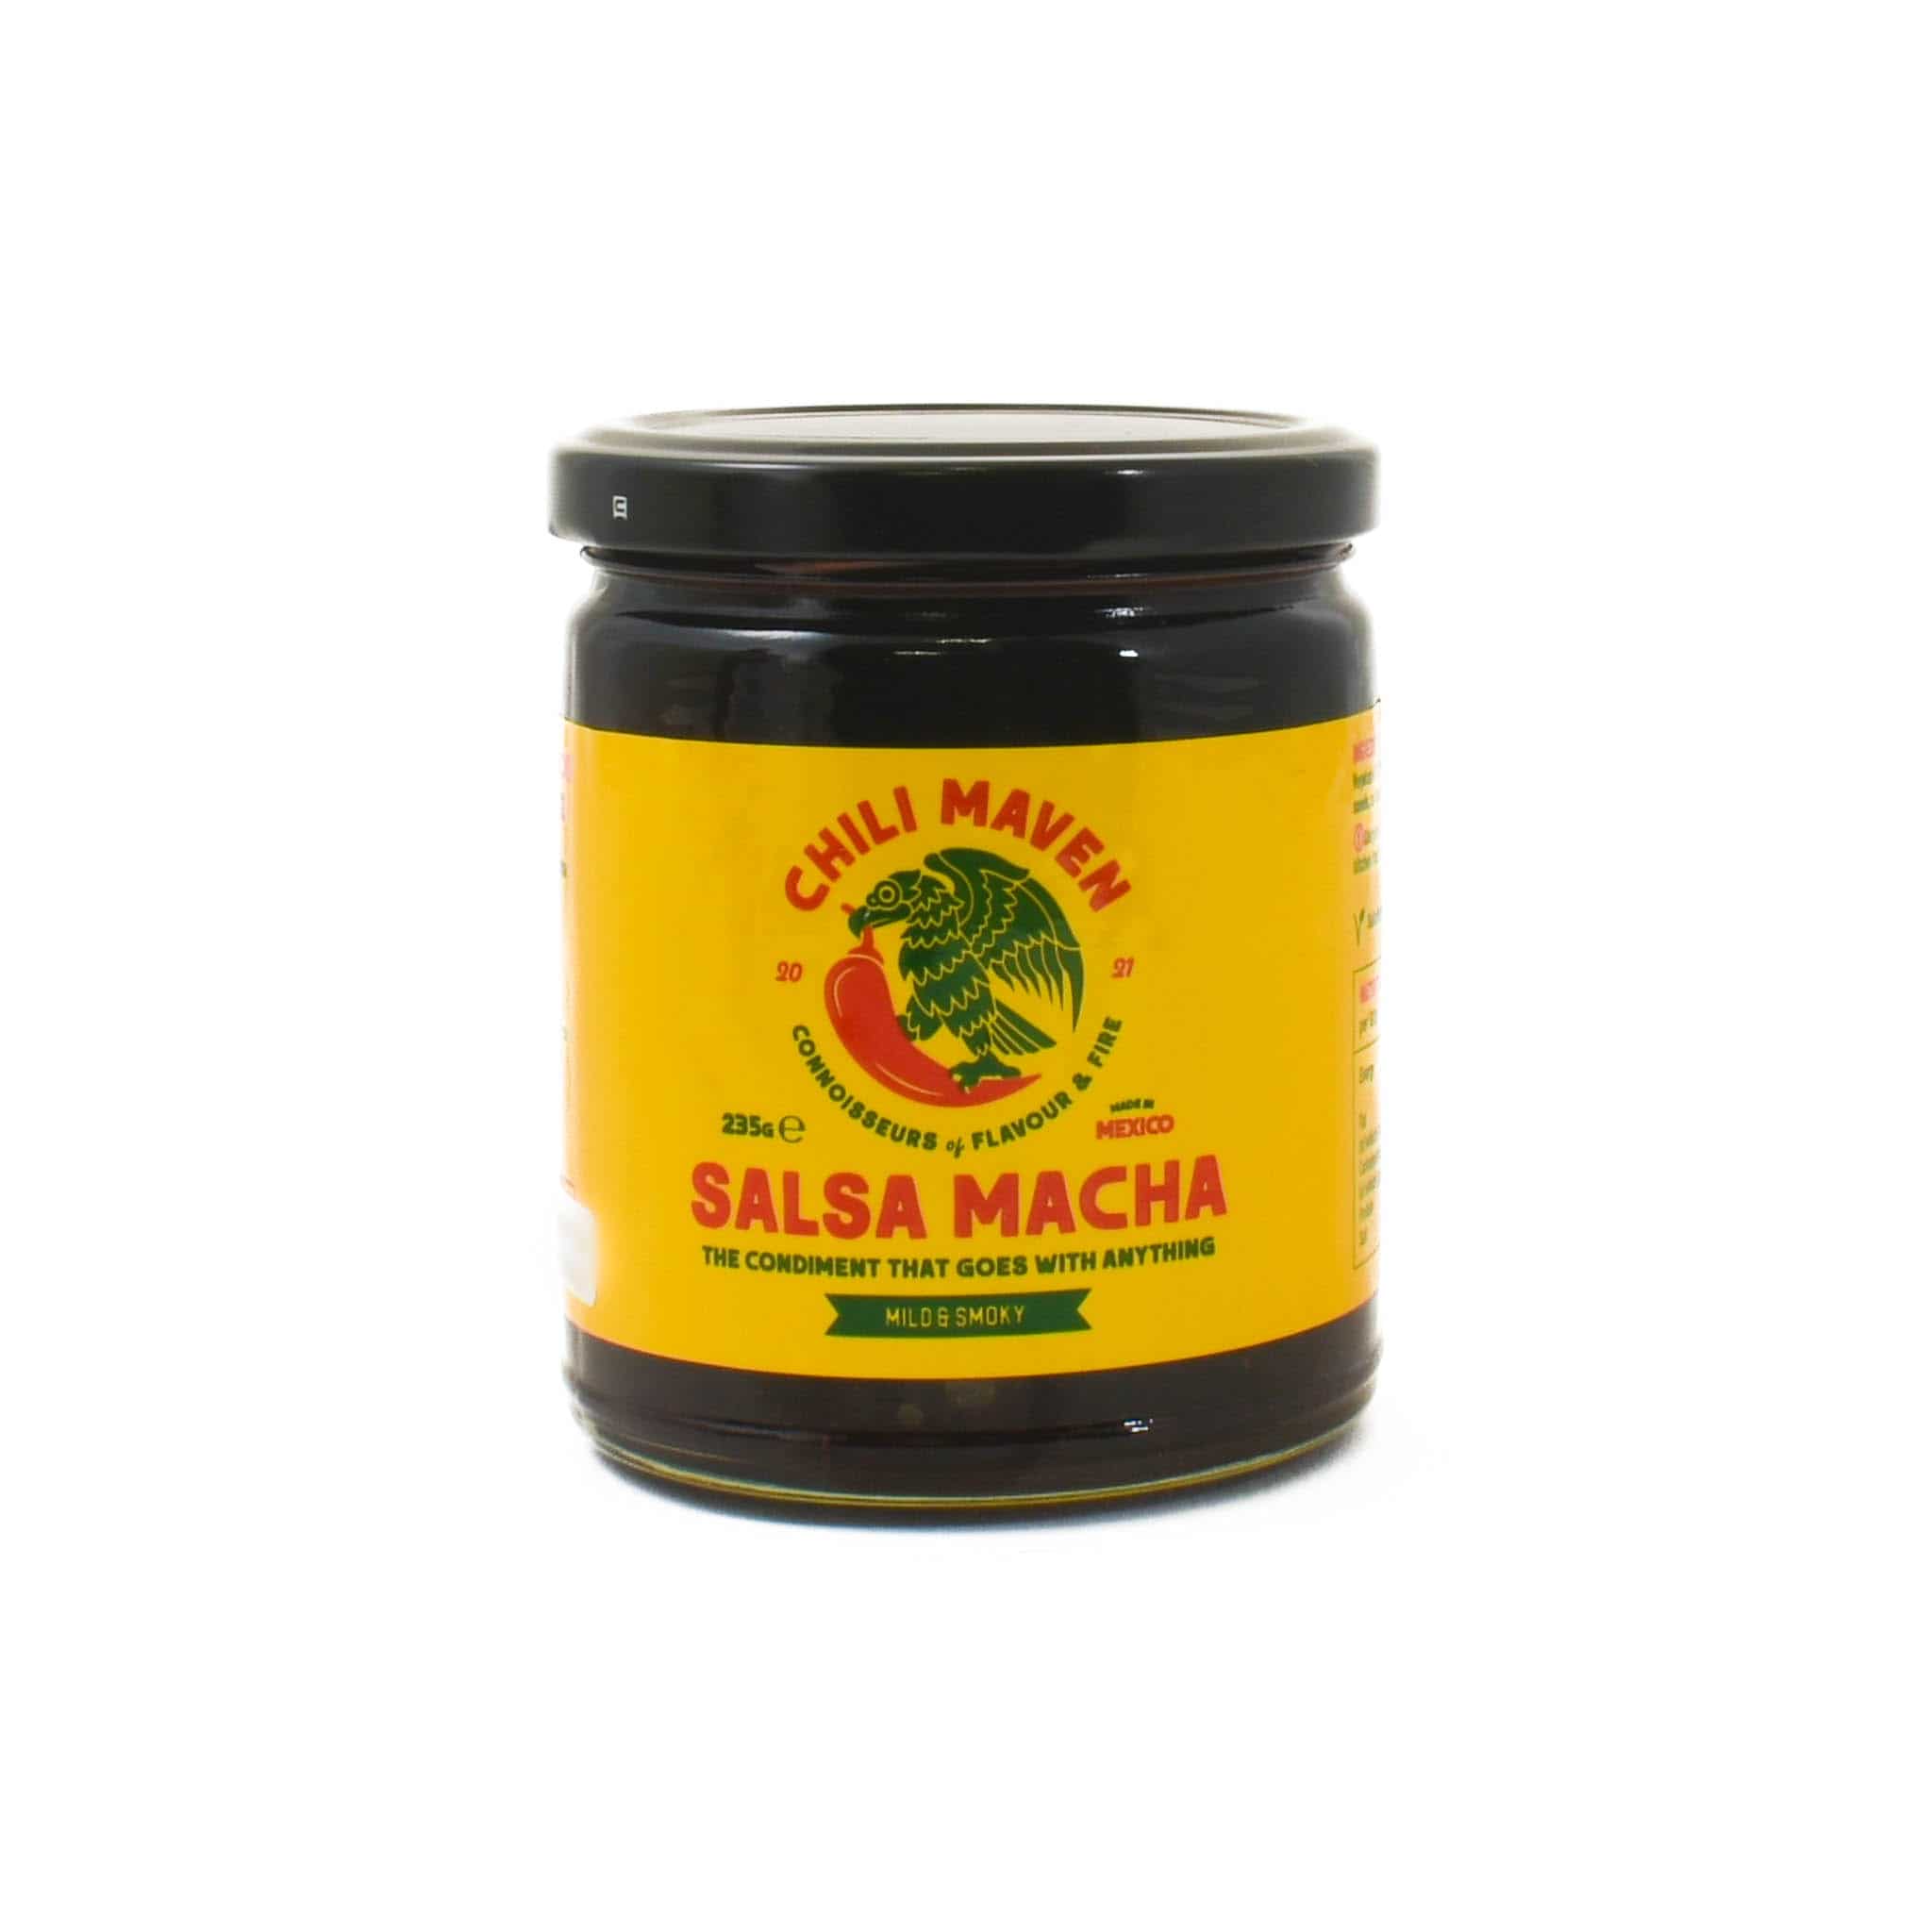 Chilli Maven Salsa Macha - Mild & Smoky, 235g